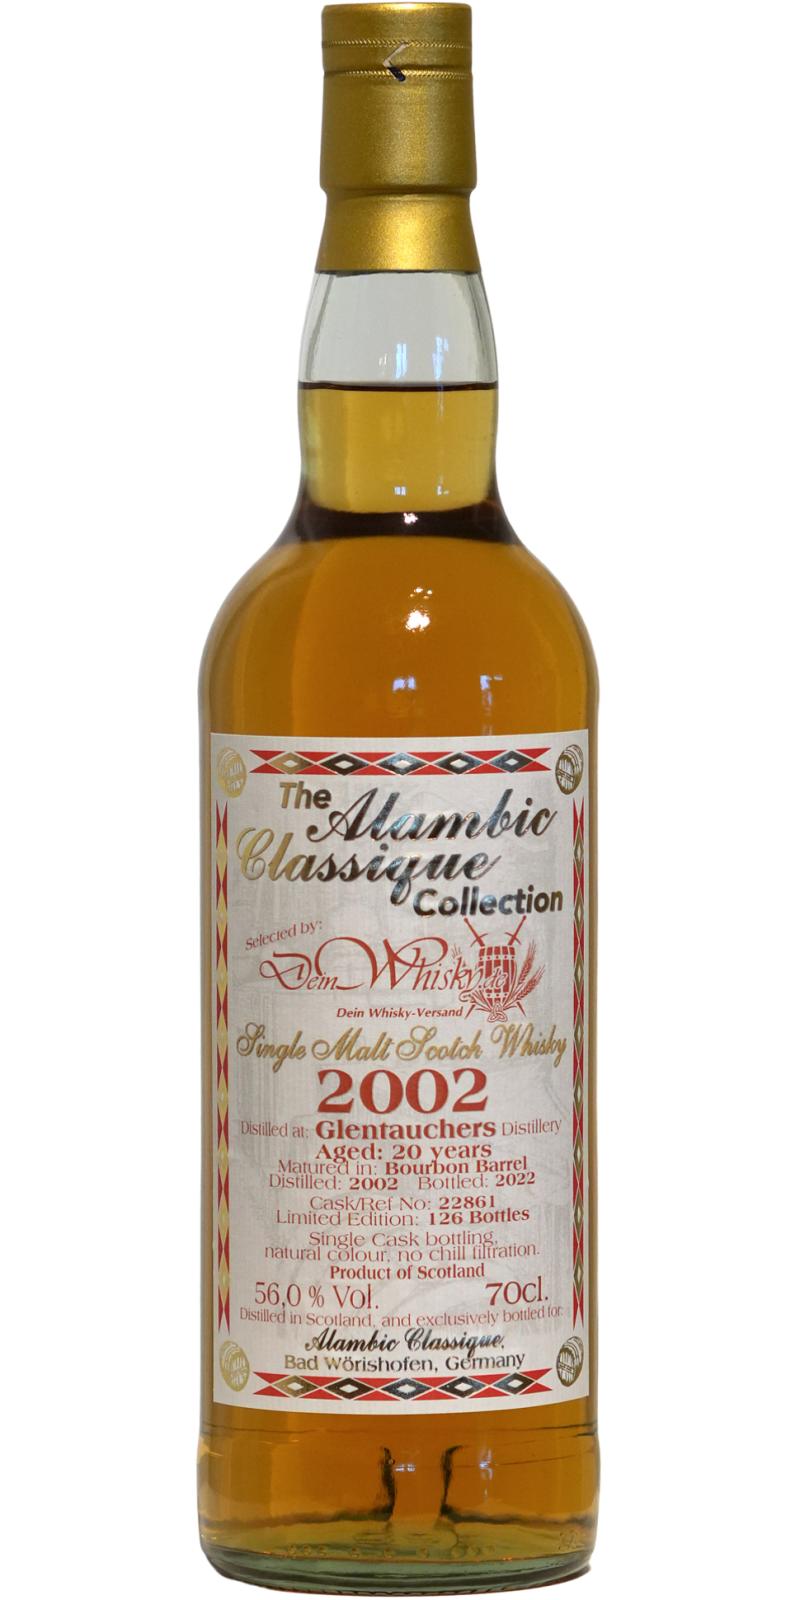 Glentauchers 2002 AC The Alambic Classique Collection Bourbon Barrel deinwhisky.de 56% 700ml